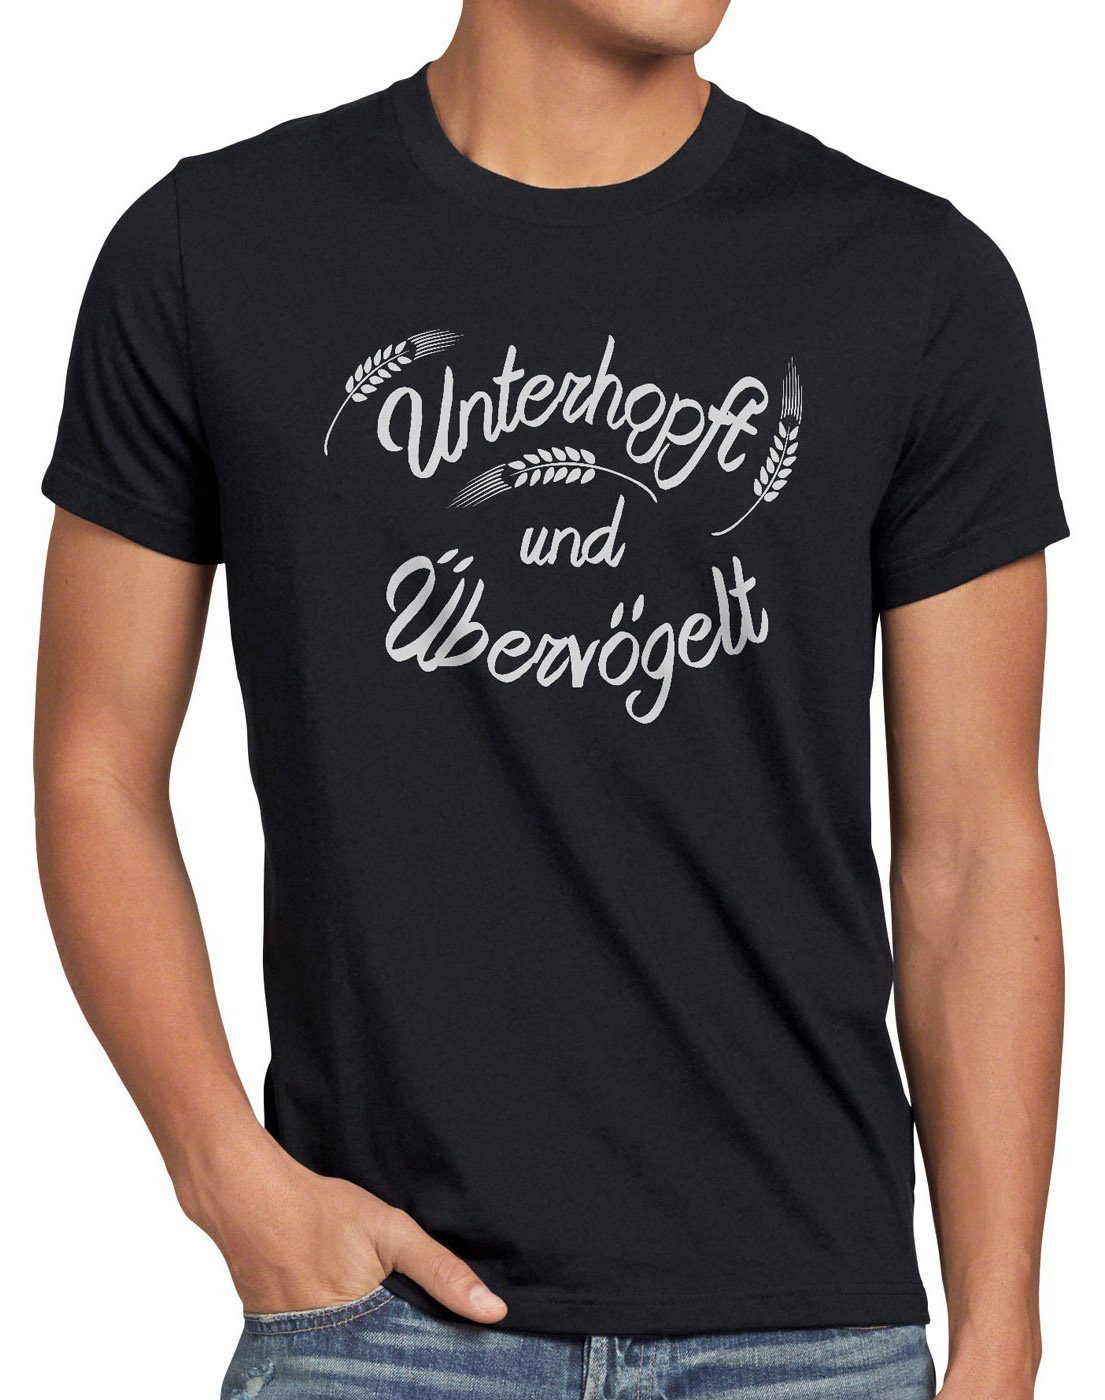 style3 Print-Shirt Herren T-Shirt Unterhopft Übervögelt Kult Shirt Funshirt Spruch Bier Malz Fun schwarz